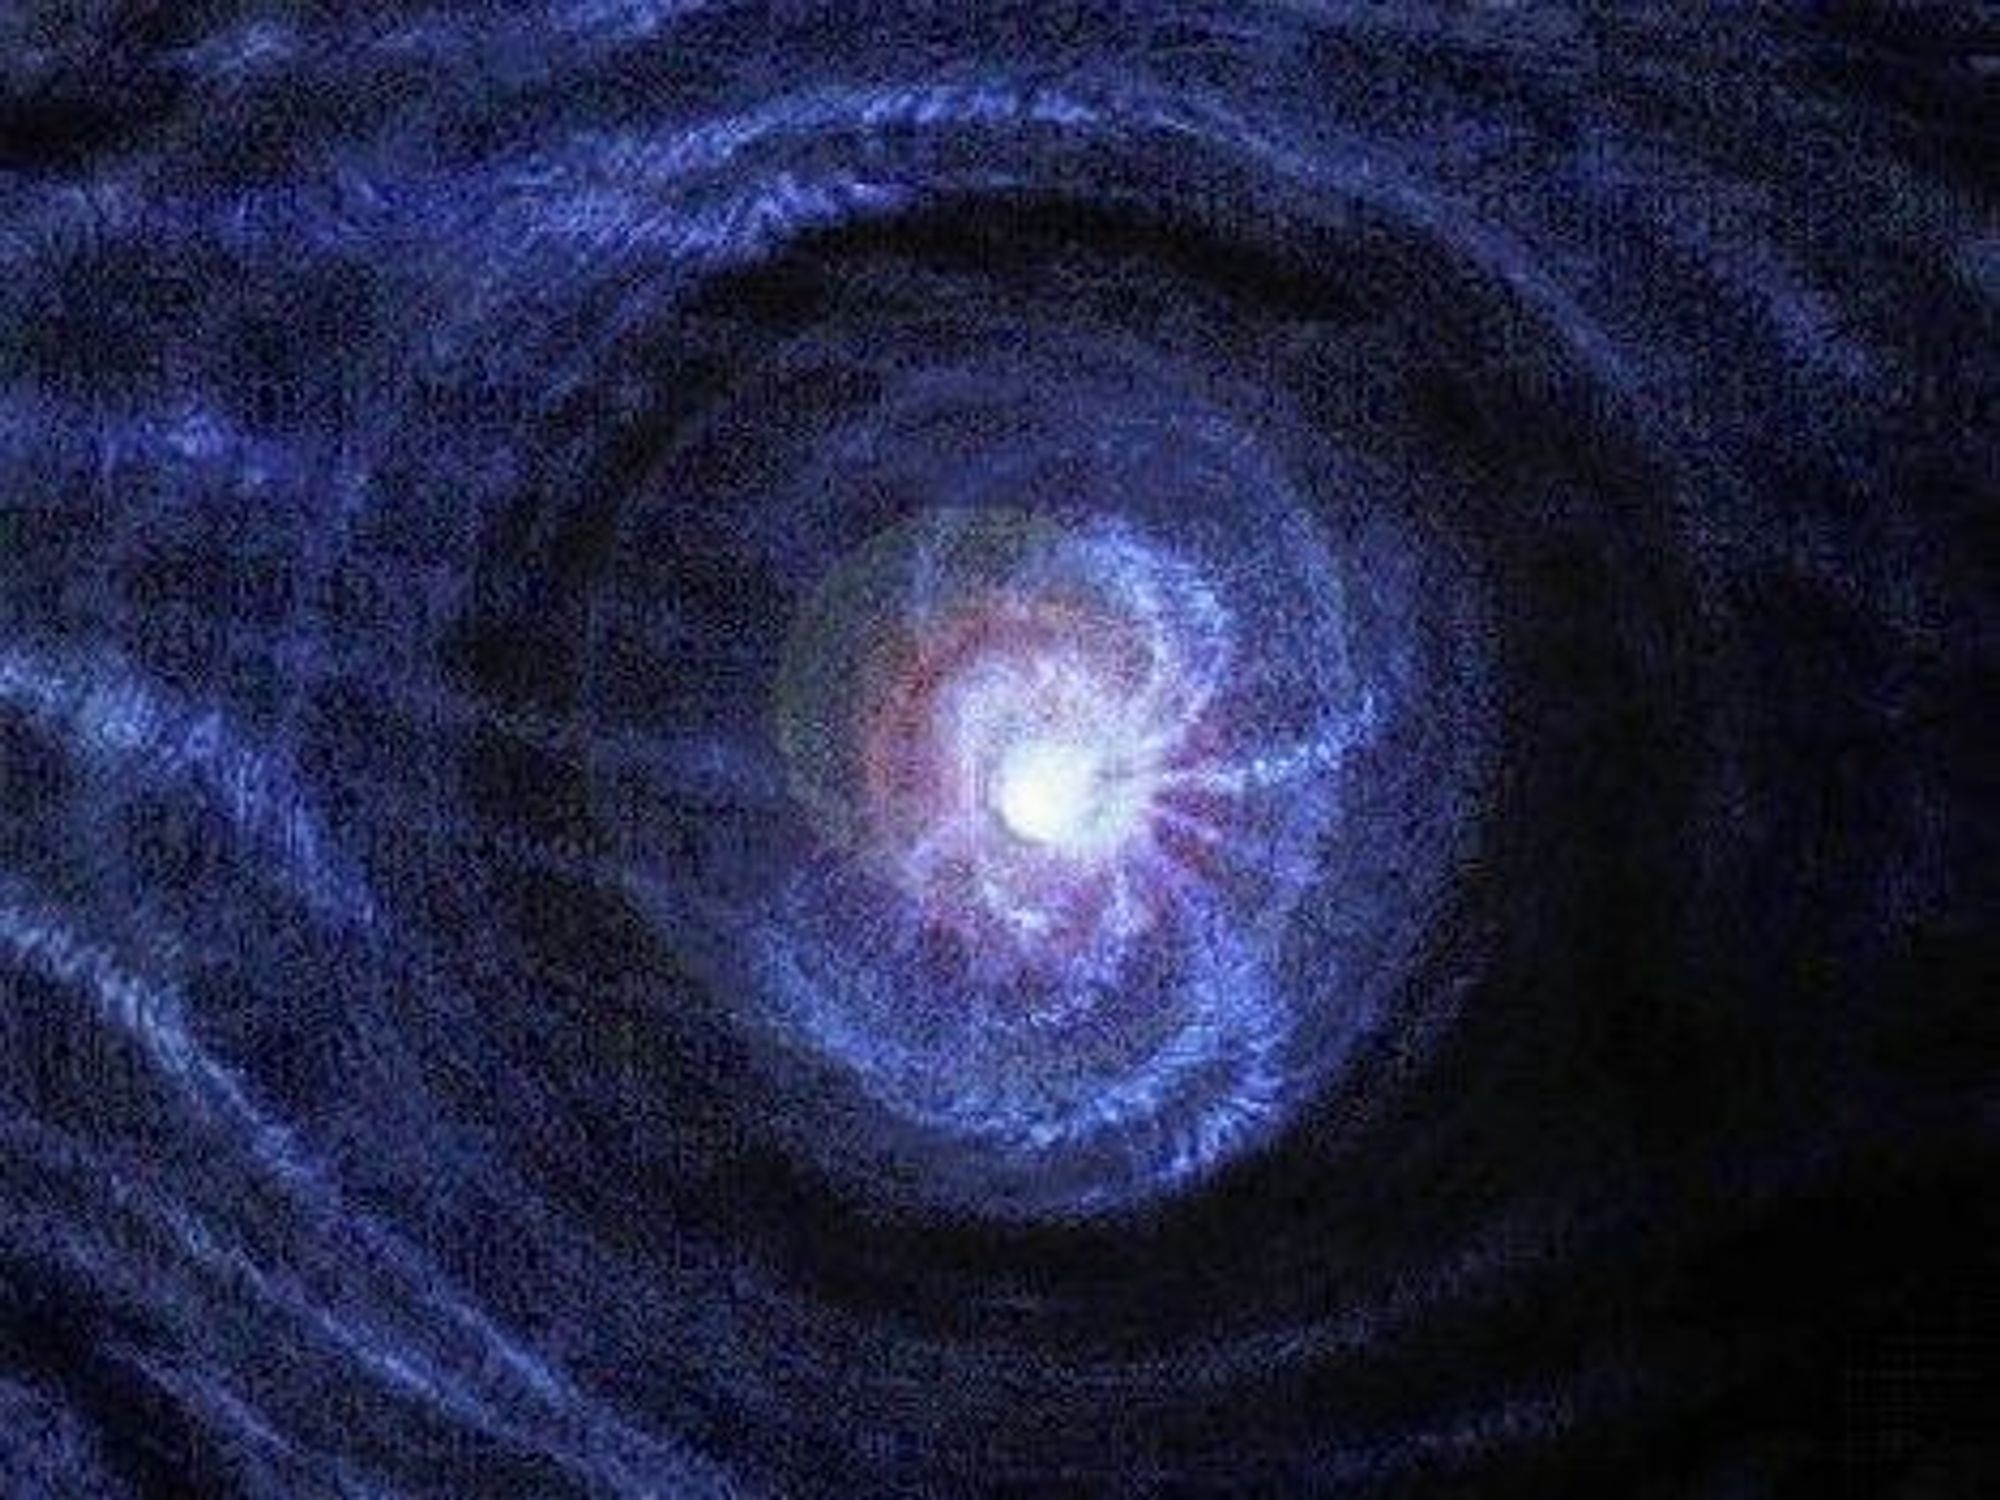 GLOHETT: Kjernen i galaksen NGC 3516 har en masse tilsvarende 10 til 50 soler, med en gravitasjon som gir en materietemperatur på titalls millioner grader. FOTO: NASA